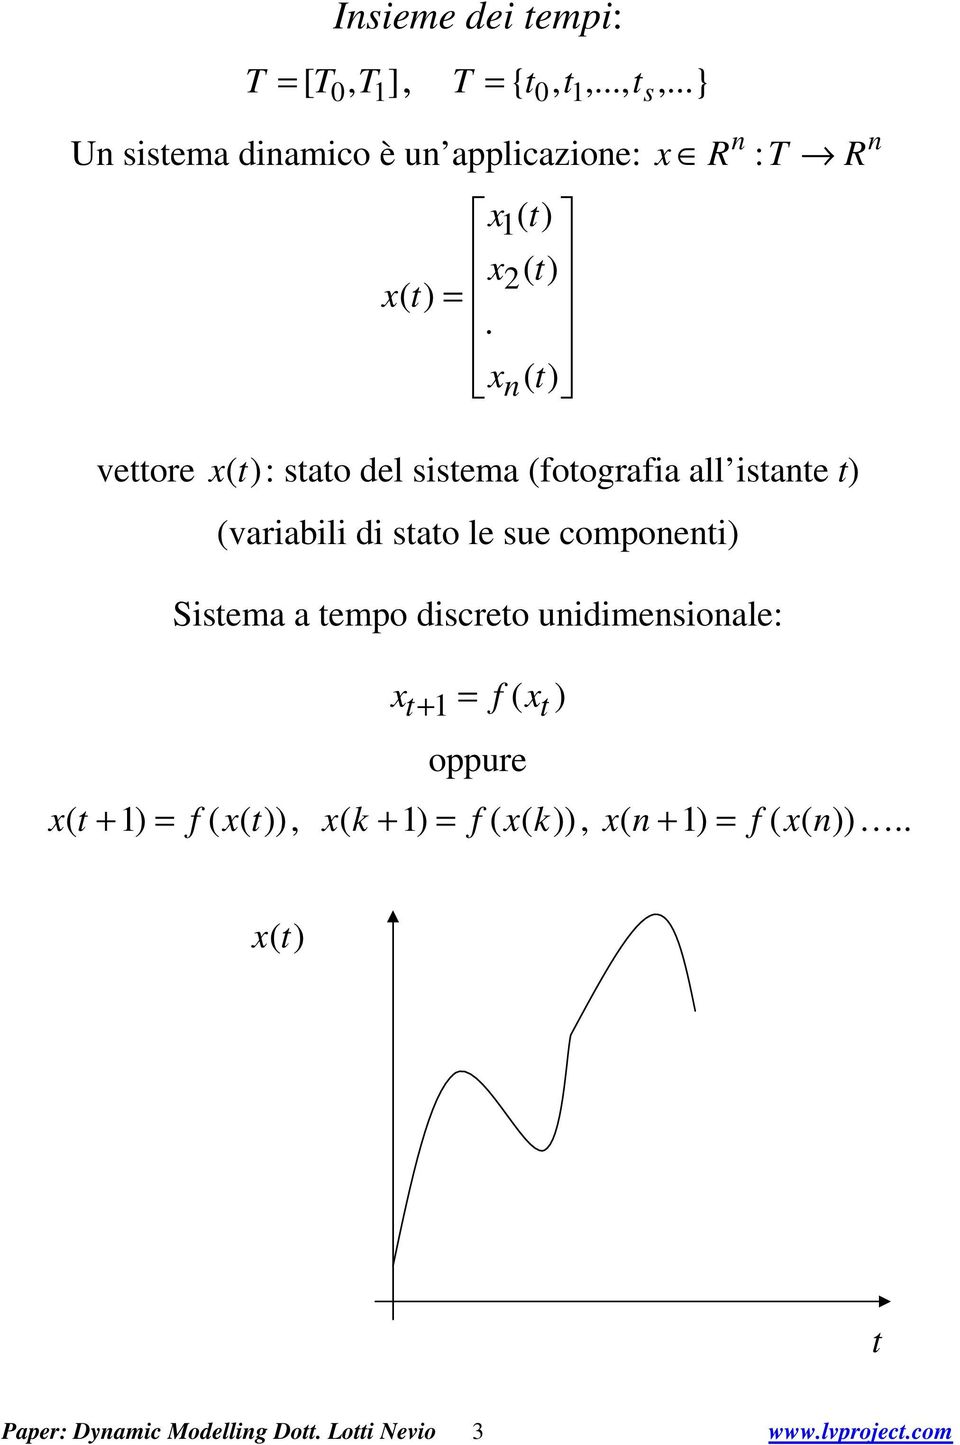 componeni Sisema a empo discreo unidimensionale: = f ( + oppure ( + = f ( (, ( k + = f (